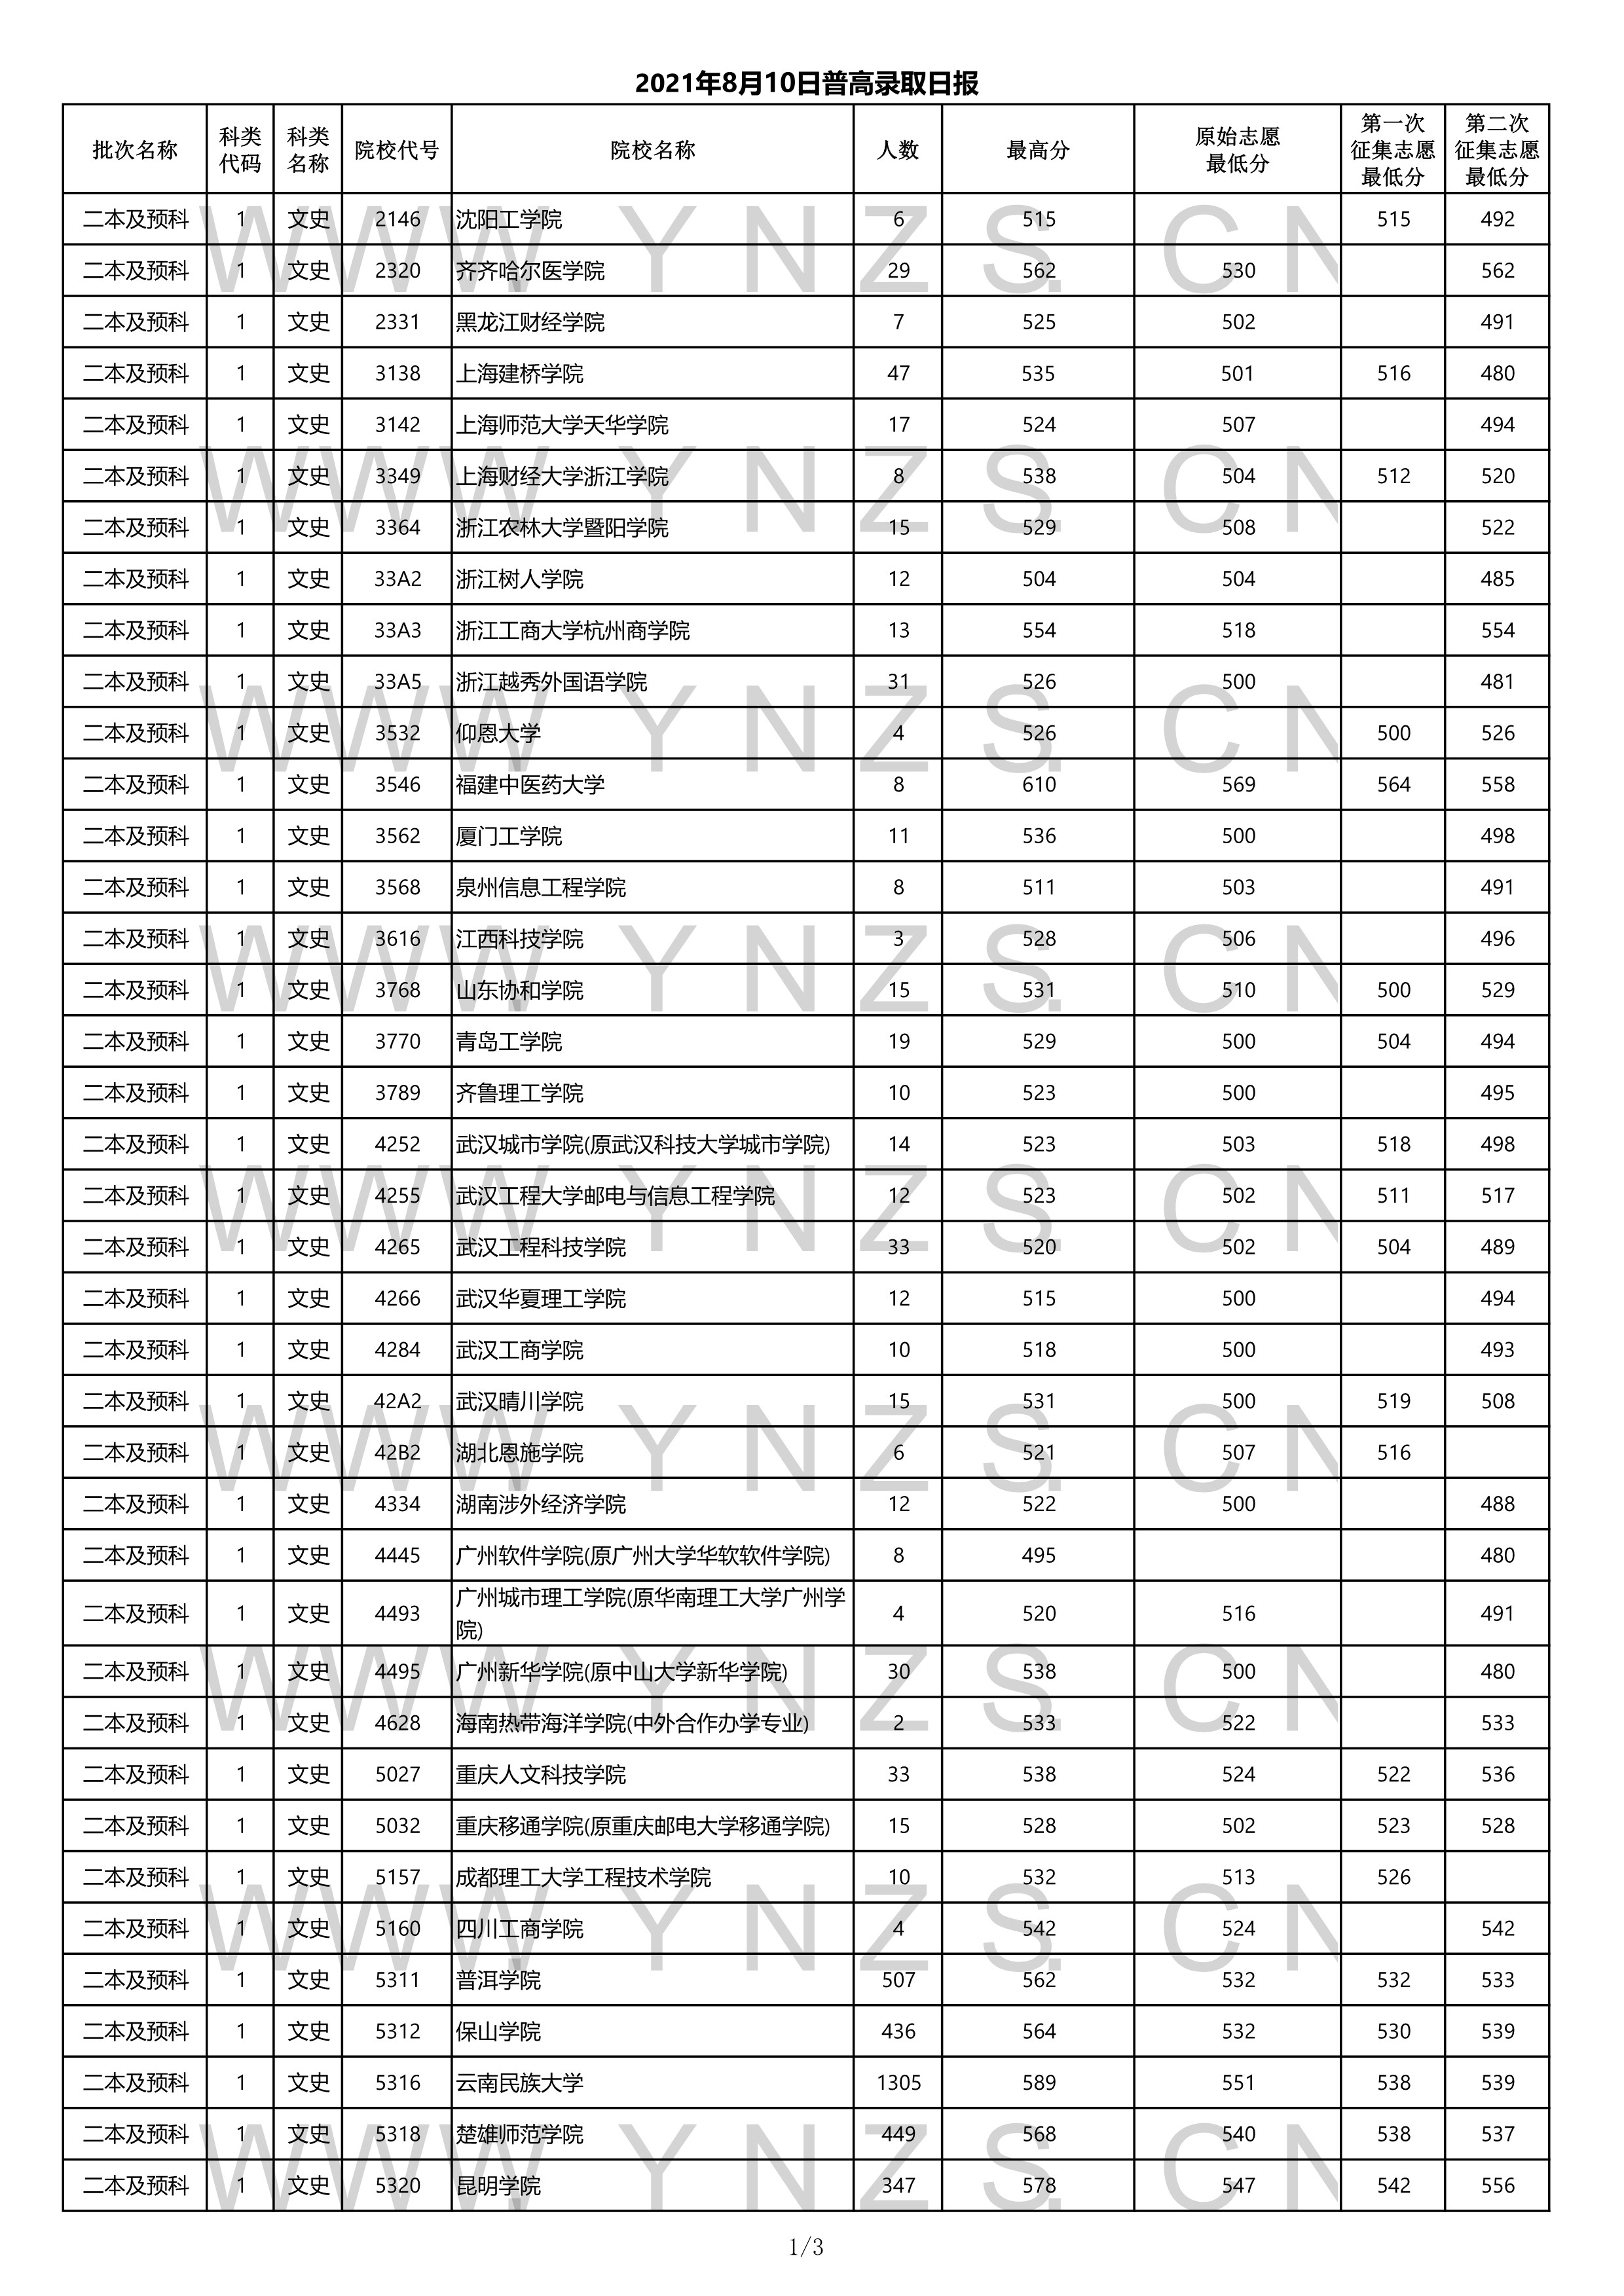 2022高考:2021年云南省二本和二本预科录取分数线